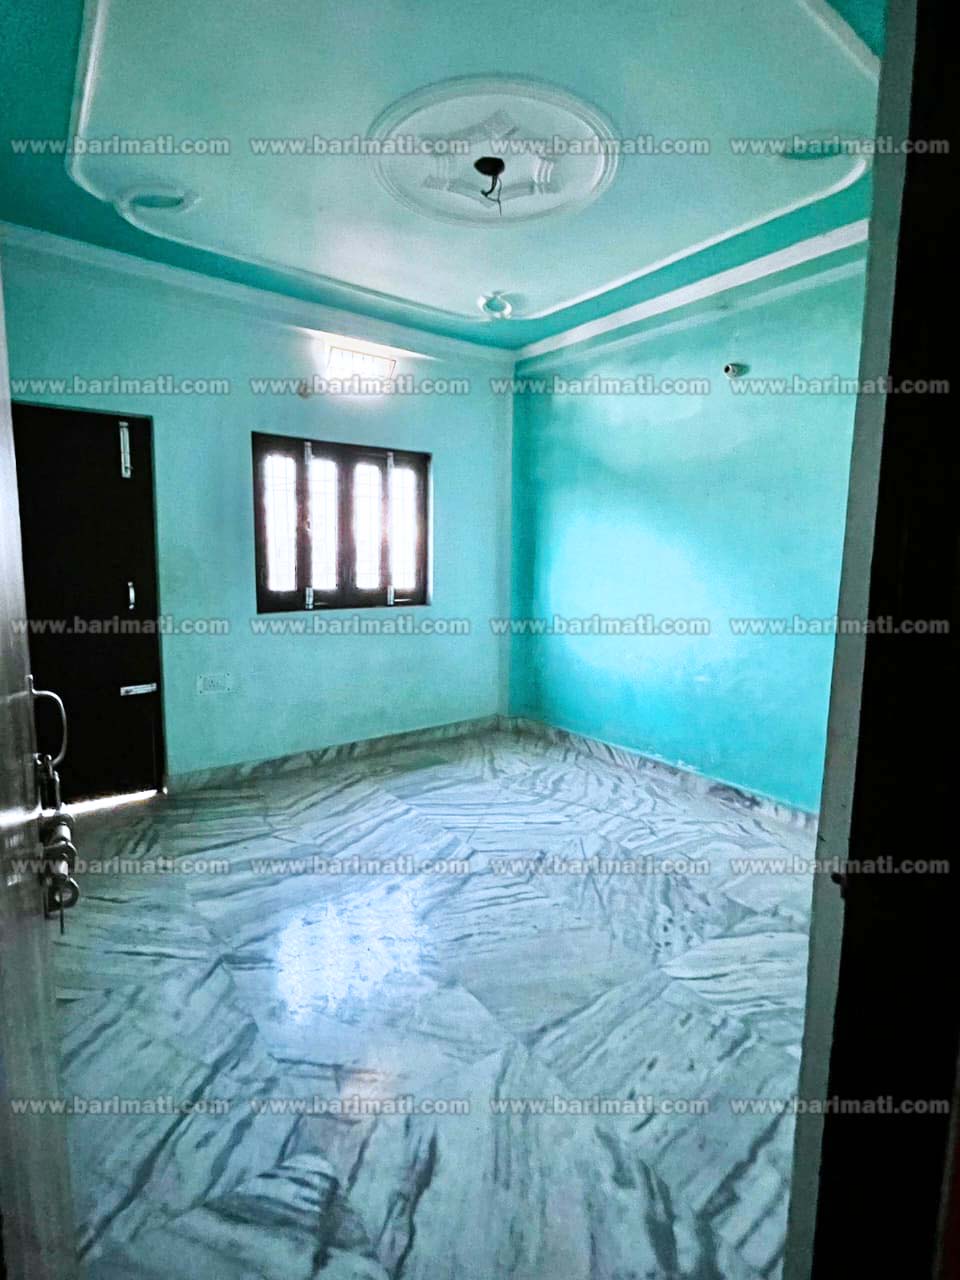 2-bedroom house for rent in East Lakshmi Nagar, Patna, priced under 7000